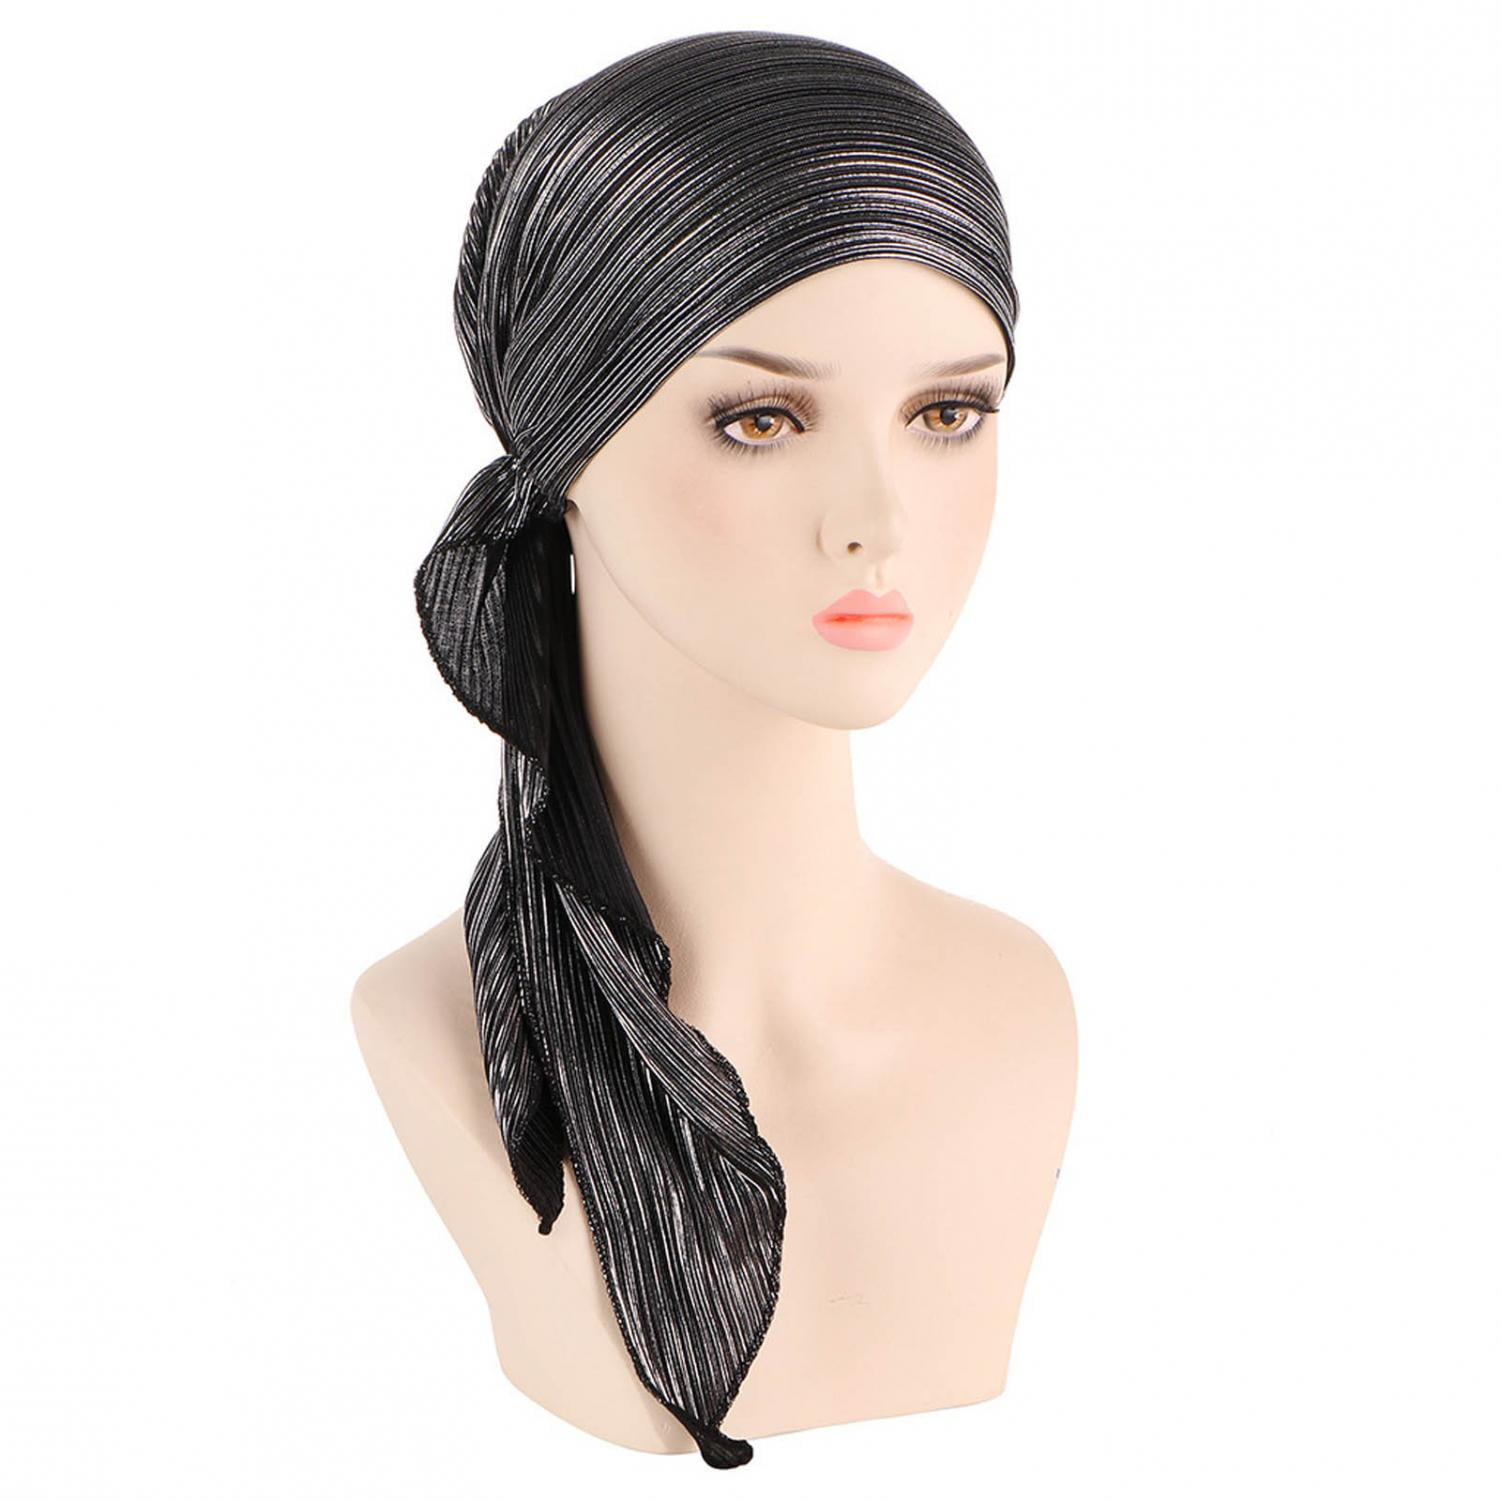 Ladies Cross Cancer Chemo Hats Muslim Beanie Turban Head Wrap Cap Go Ahead Soft 